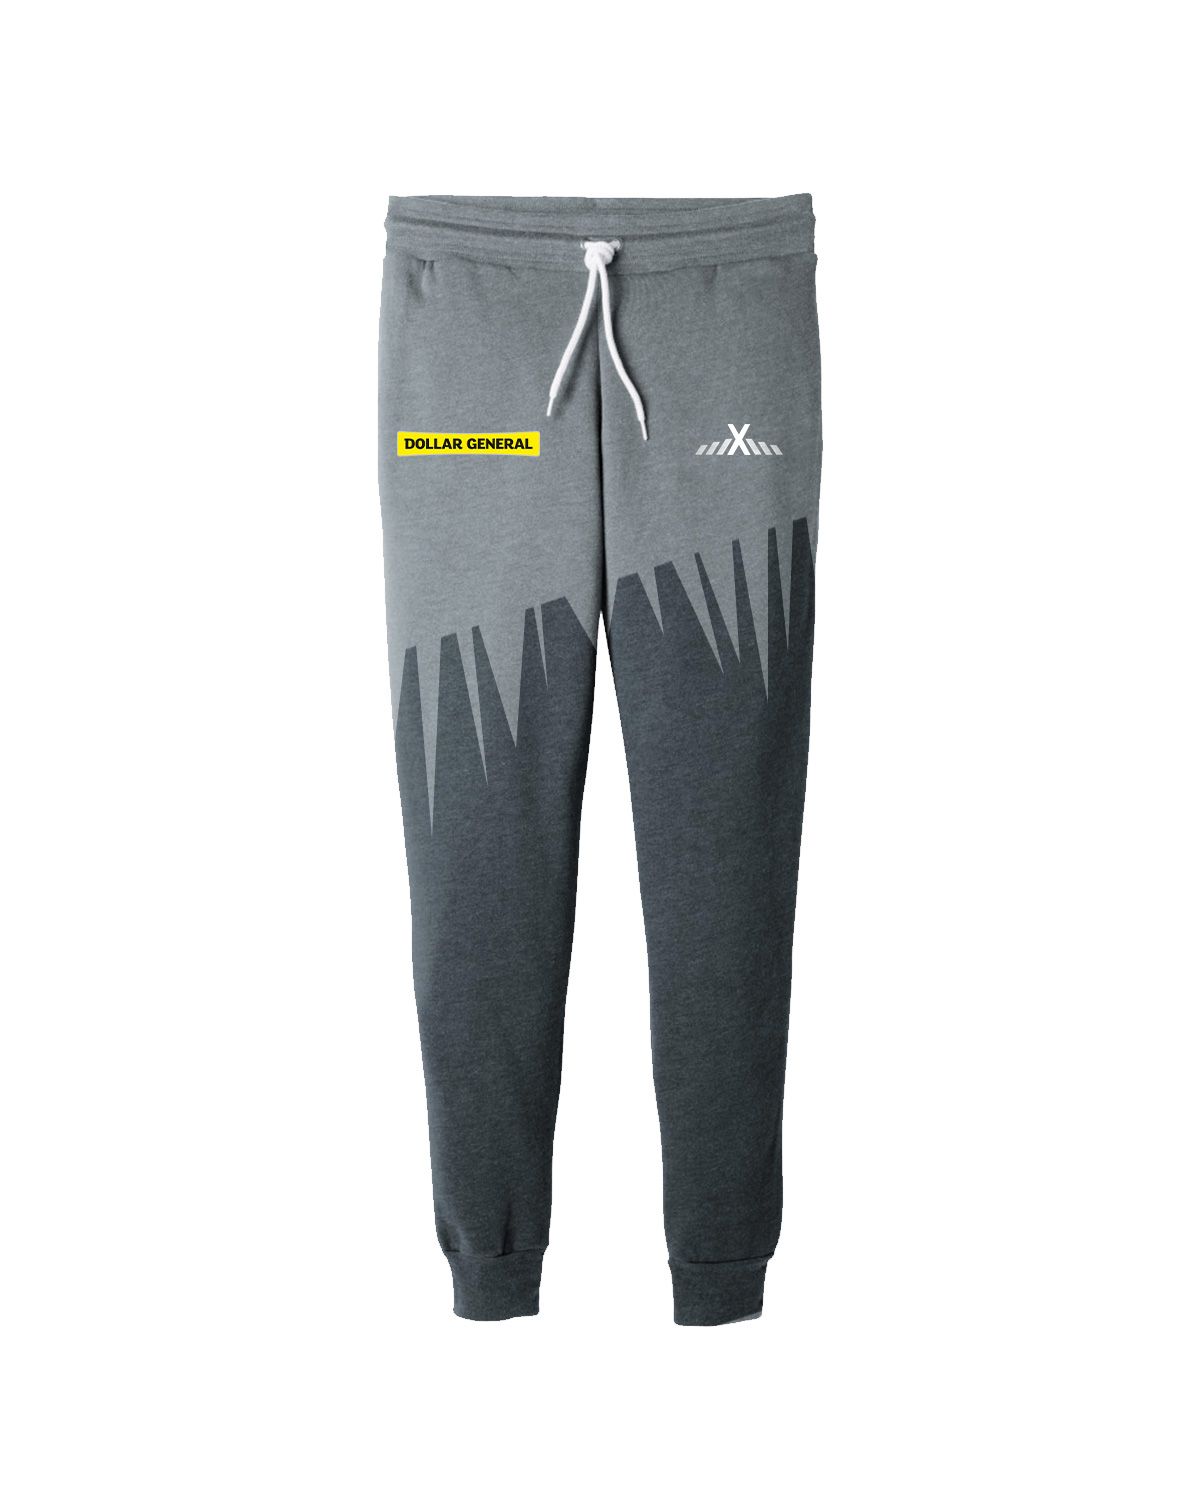 AthleisureX Full Custom Pants/Bottom - For Men